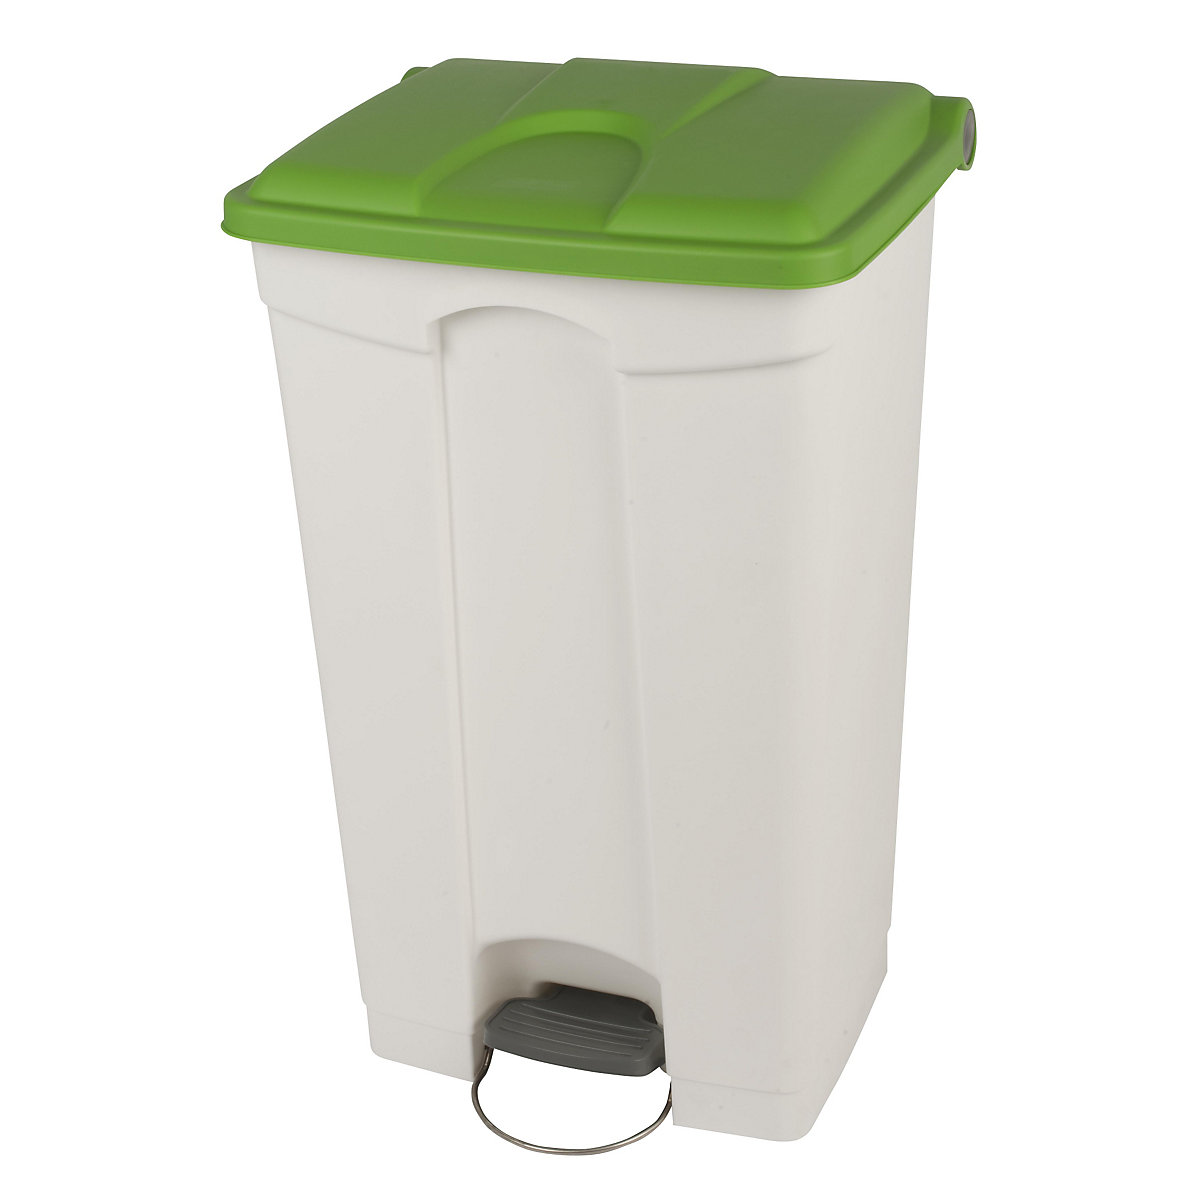 Nádoba na odpad s pedálem, objem 90 l, š x v x h 505 x 790 x 410 mm, bílá, zelené víko